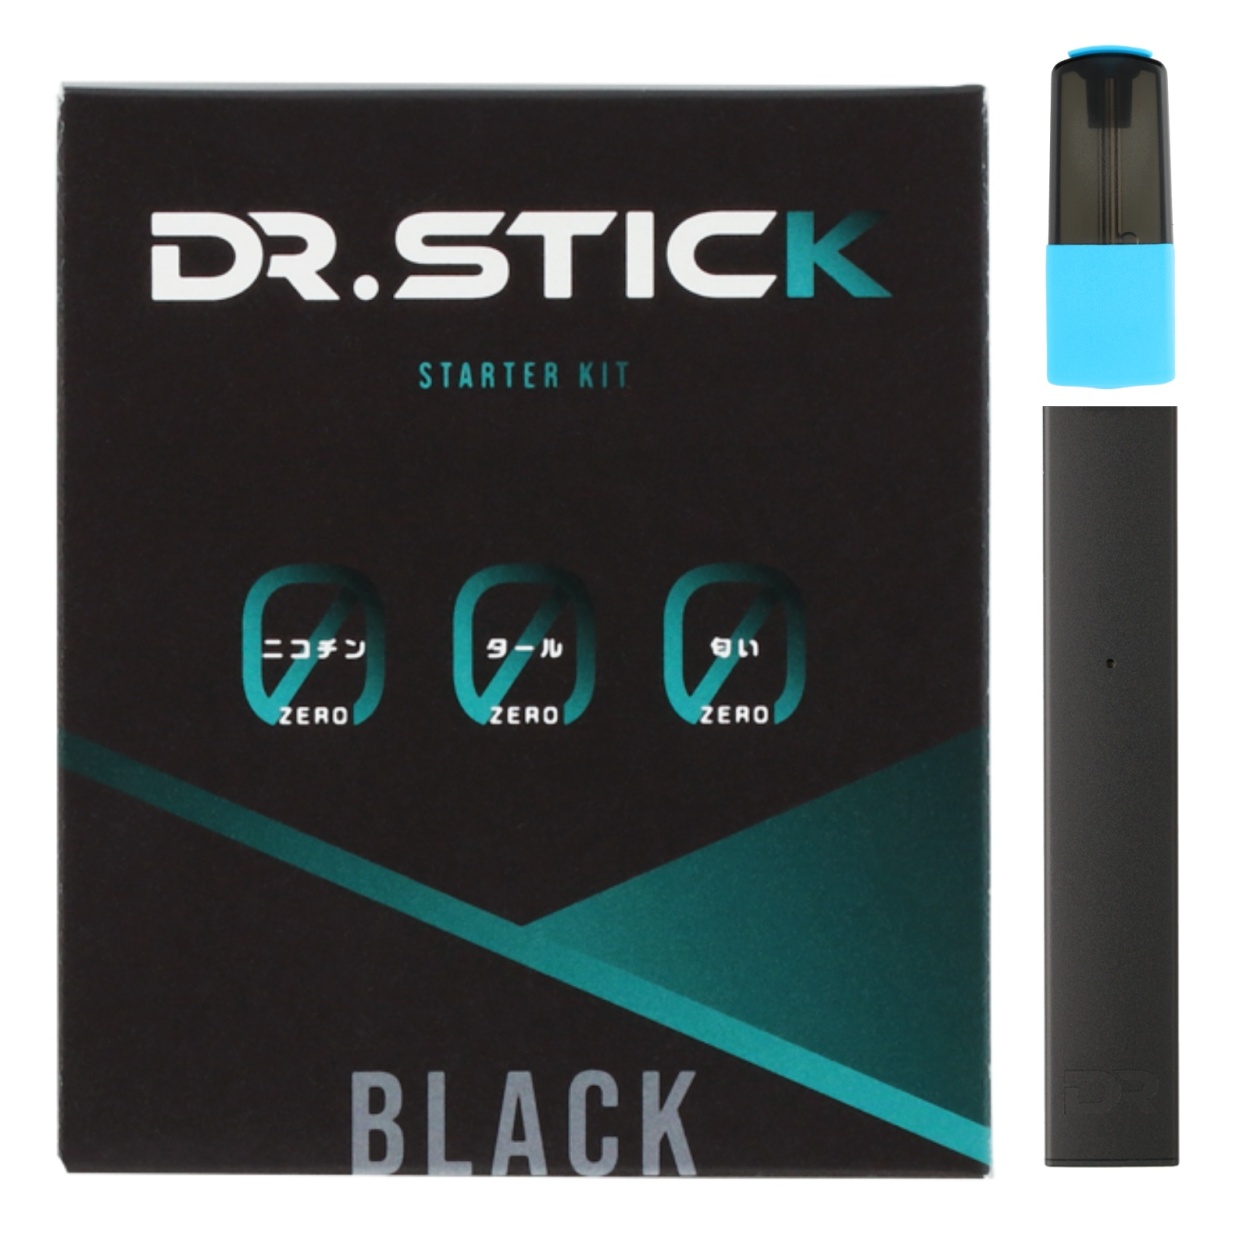 ドクタースティック DR.STICK 電子タバコ お得なリキッドセット 選べる 